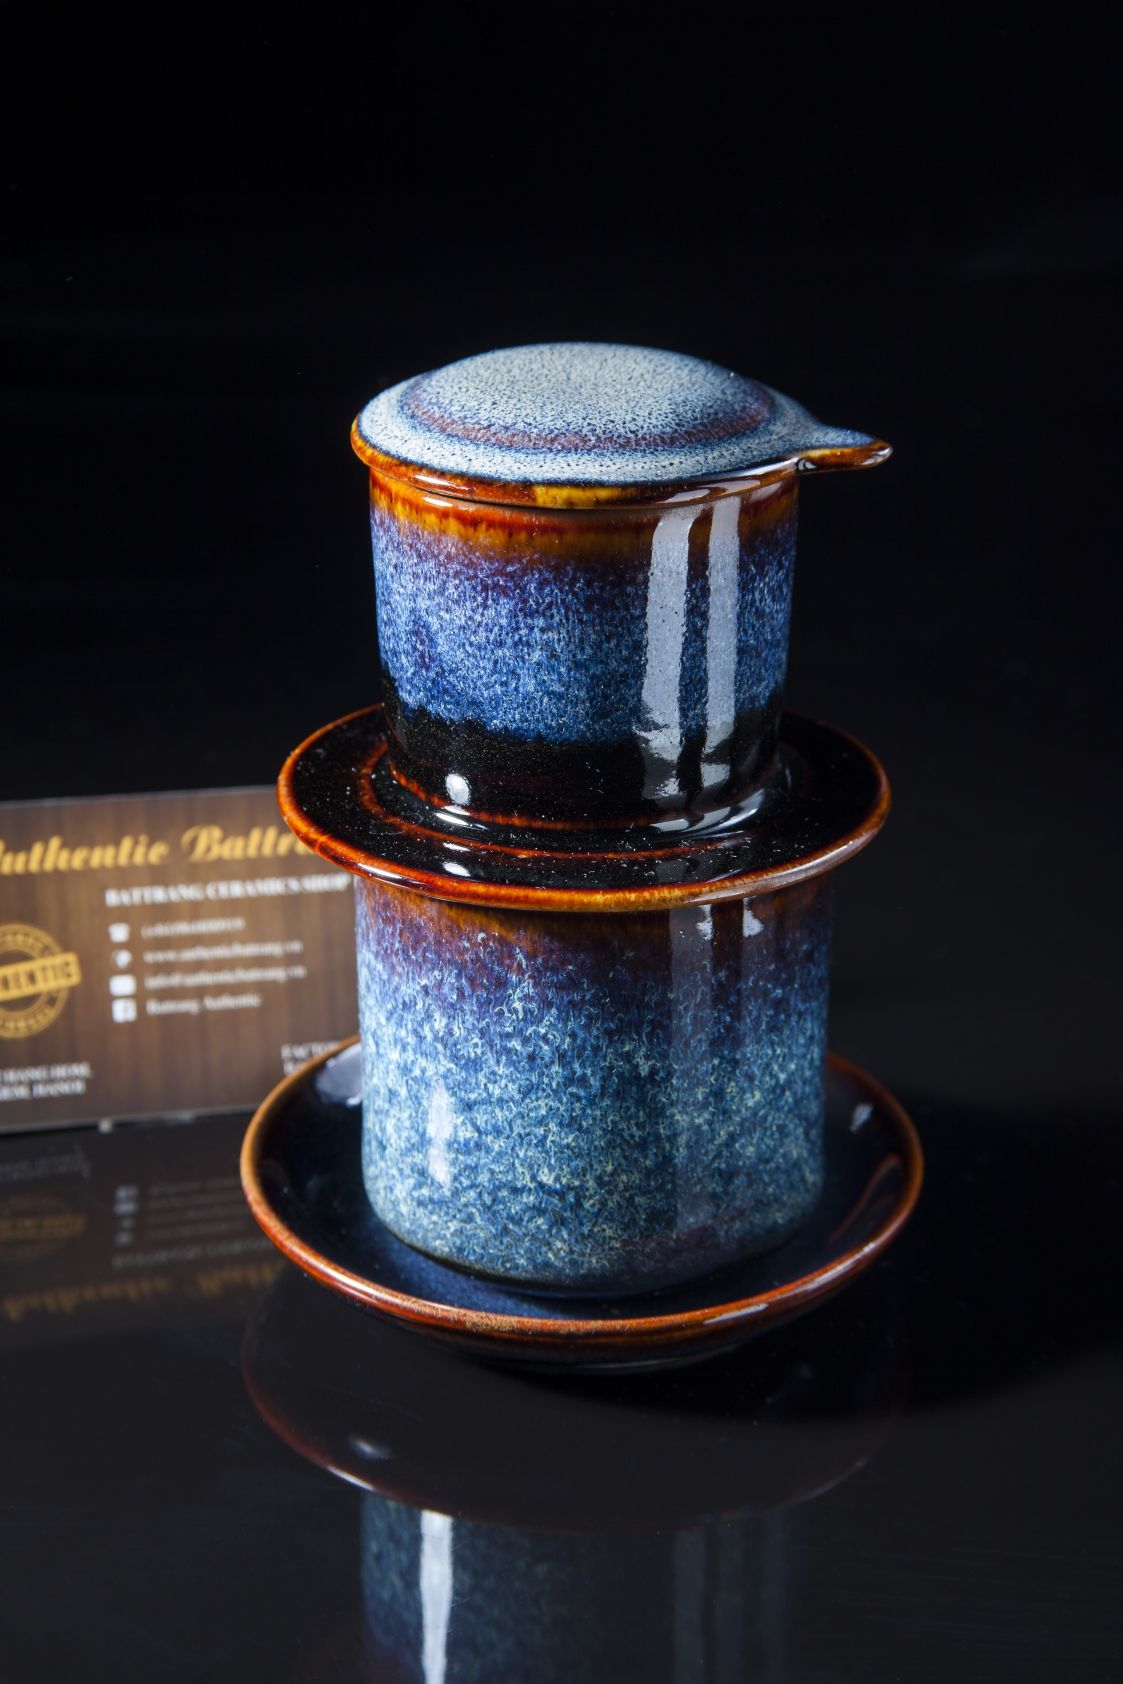 Blue Vietnamese coffee filter - bộ phin cà phê gốm sứ men xanh hỏa biến đẳng cấp sản xuất tại xương gia oanh authentic bat trang